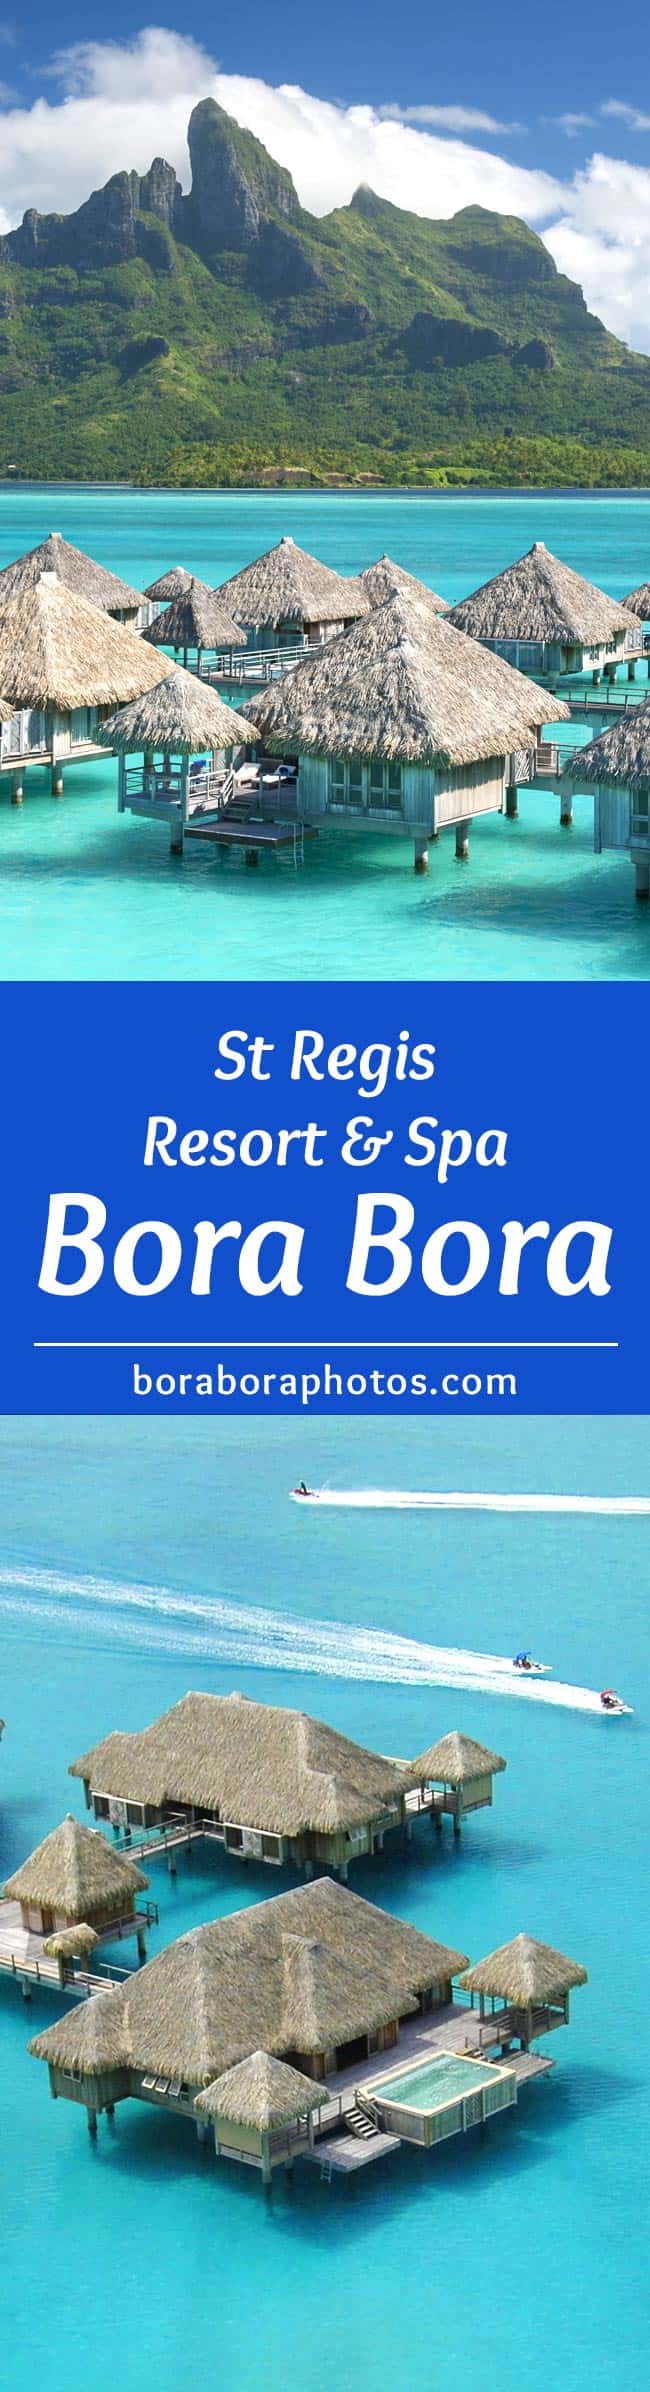 St. Regis Resort in Bora Bora